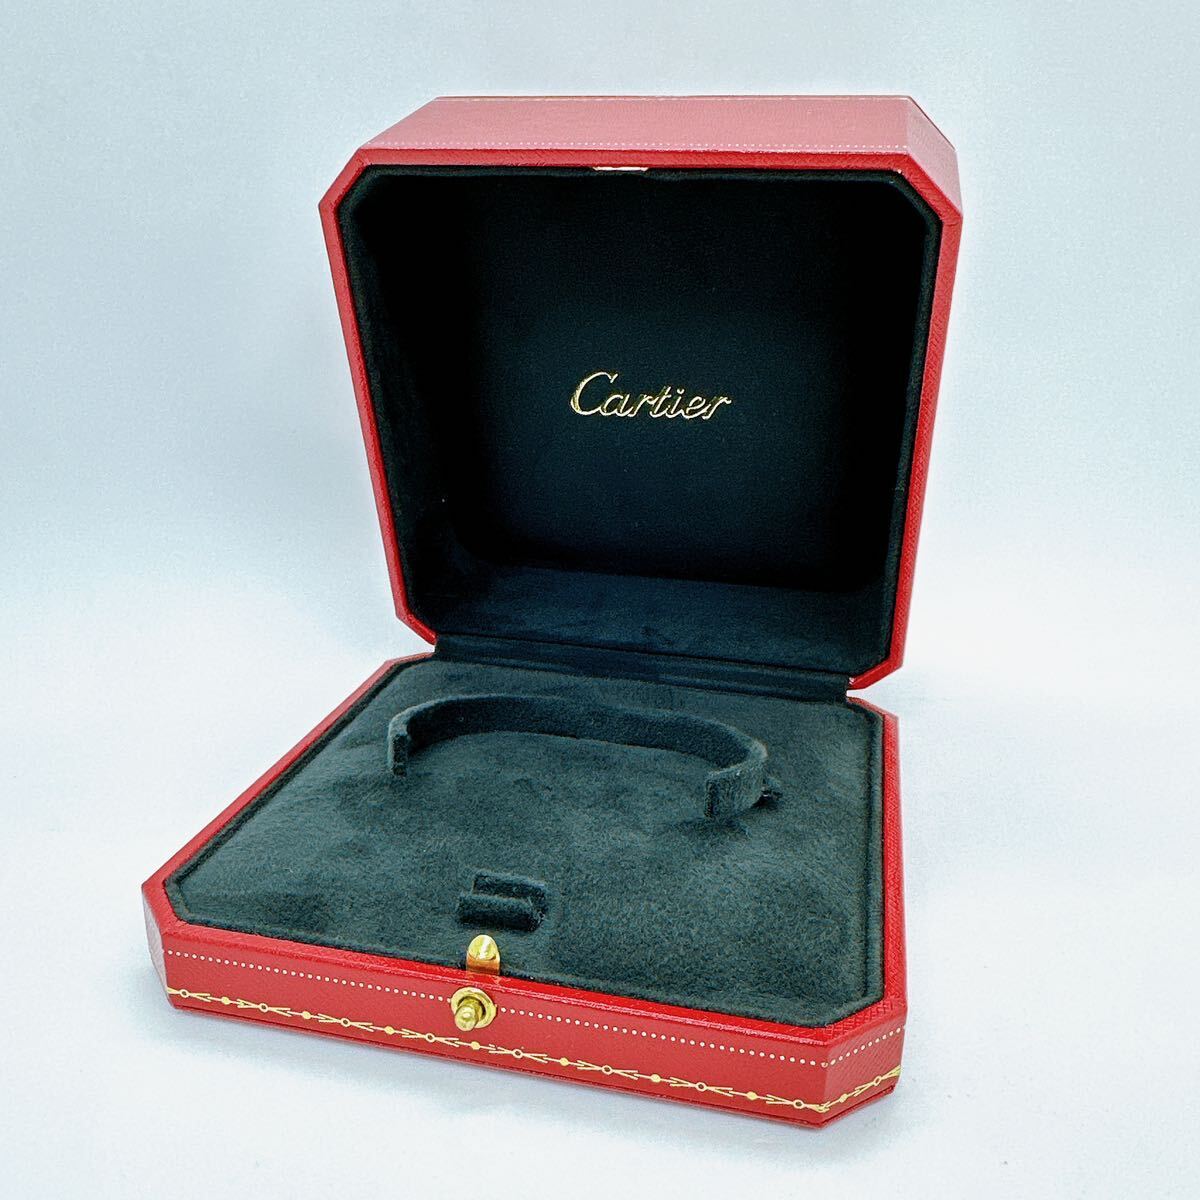 04029 カルティエ Cartier 箱 空箱 ケース ボックス 純正 ラブブレス バングル ブレスレットの画像1